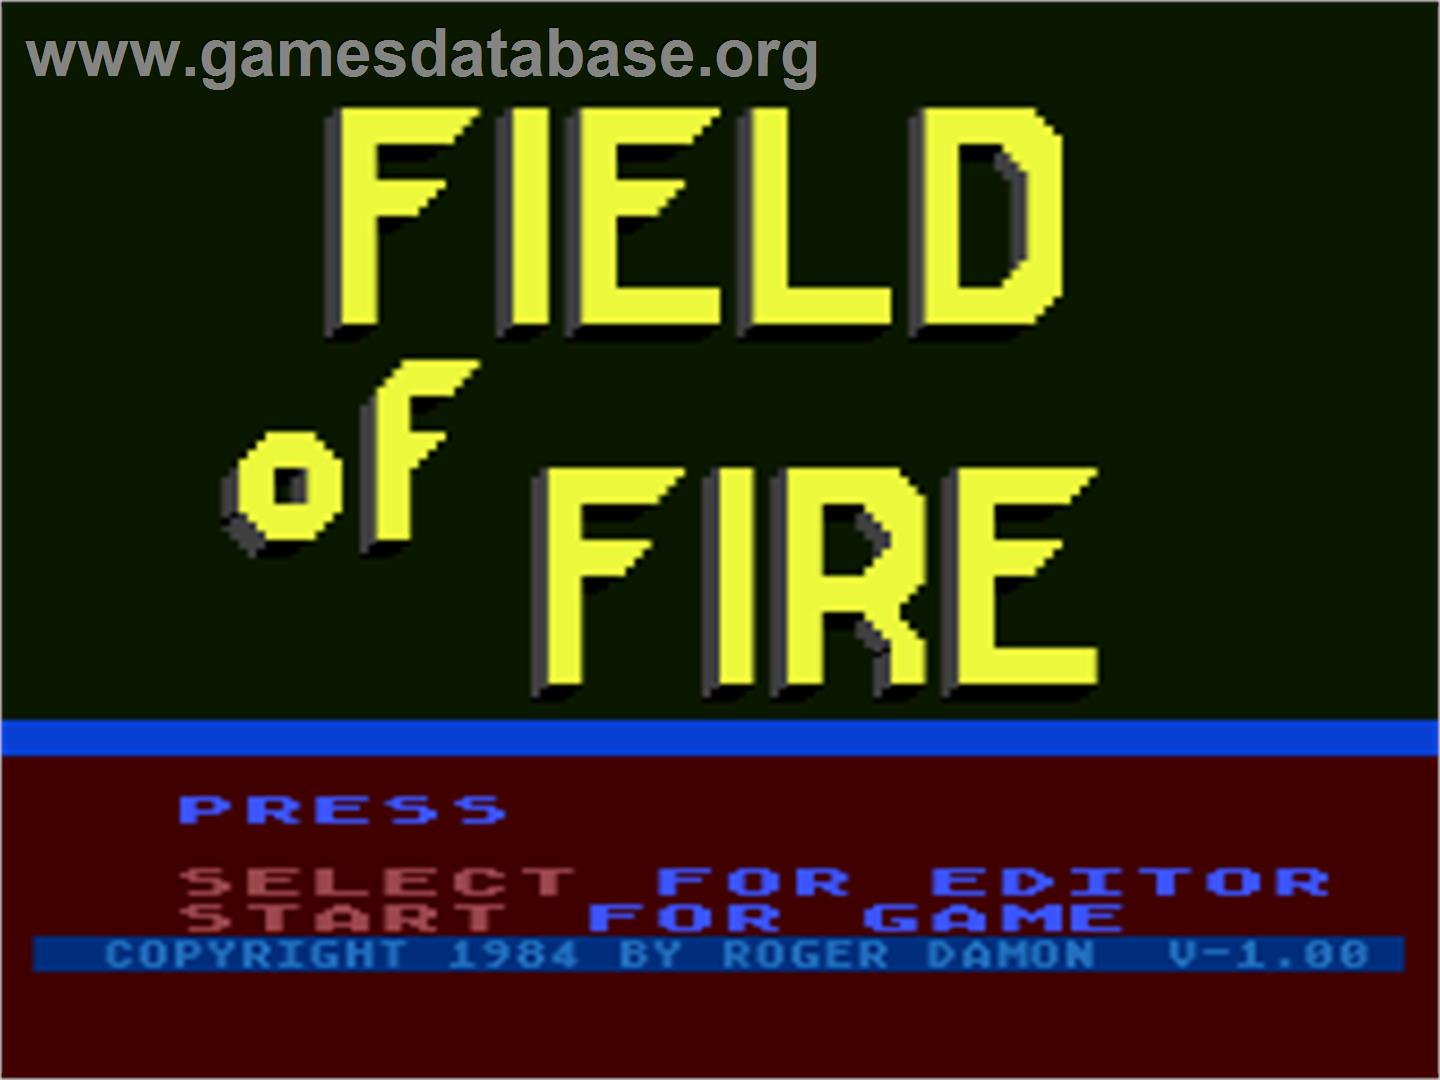 Guild of Thieves - Atari 8-bit - Artwork - Title Screen